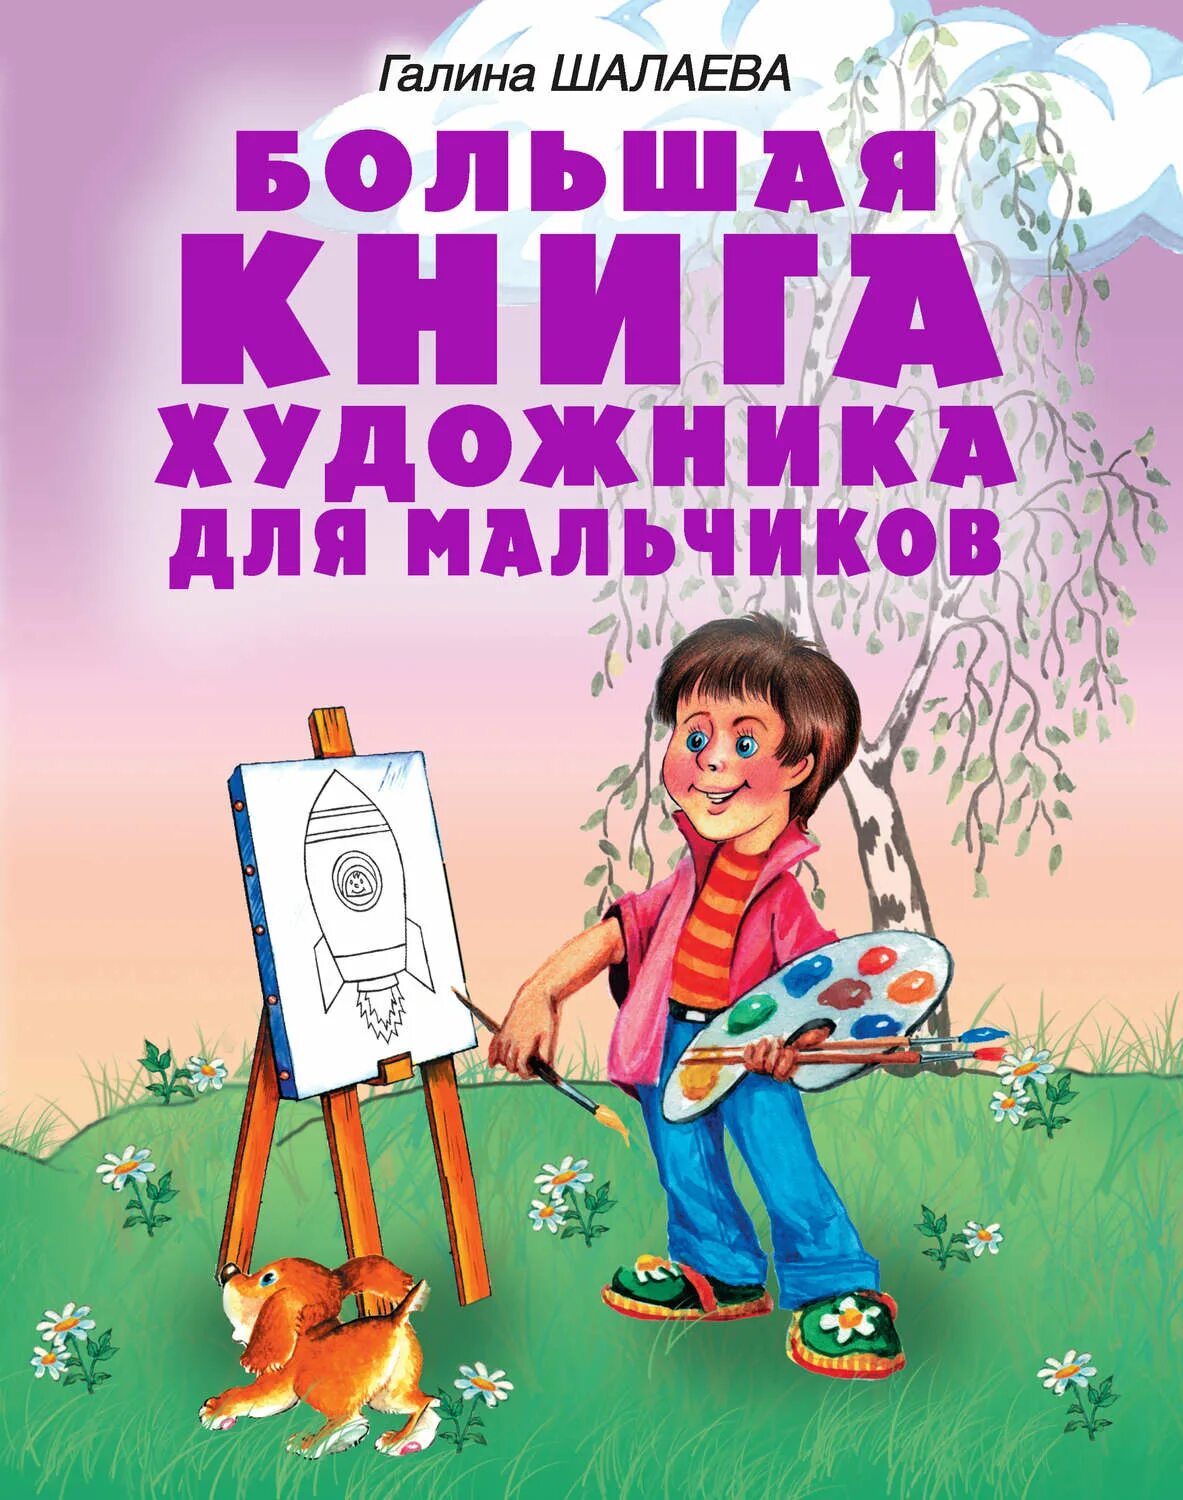 Книги галины шалаевой. Книга Шалаева большая книга художника для мальчиков. Детские книги про художников. Книги о художниках для детей.